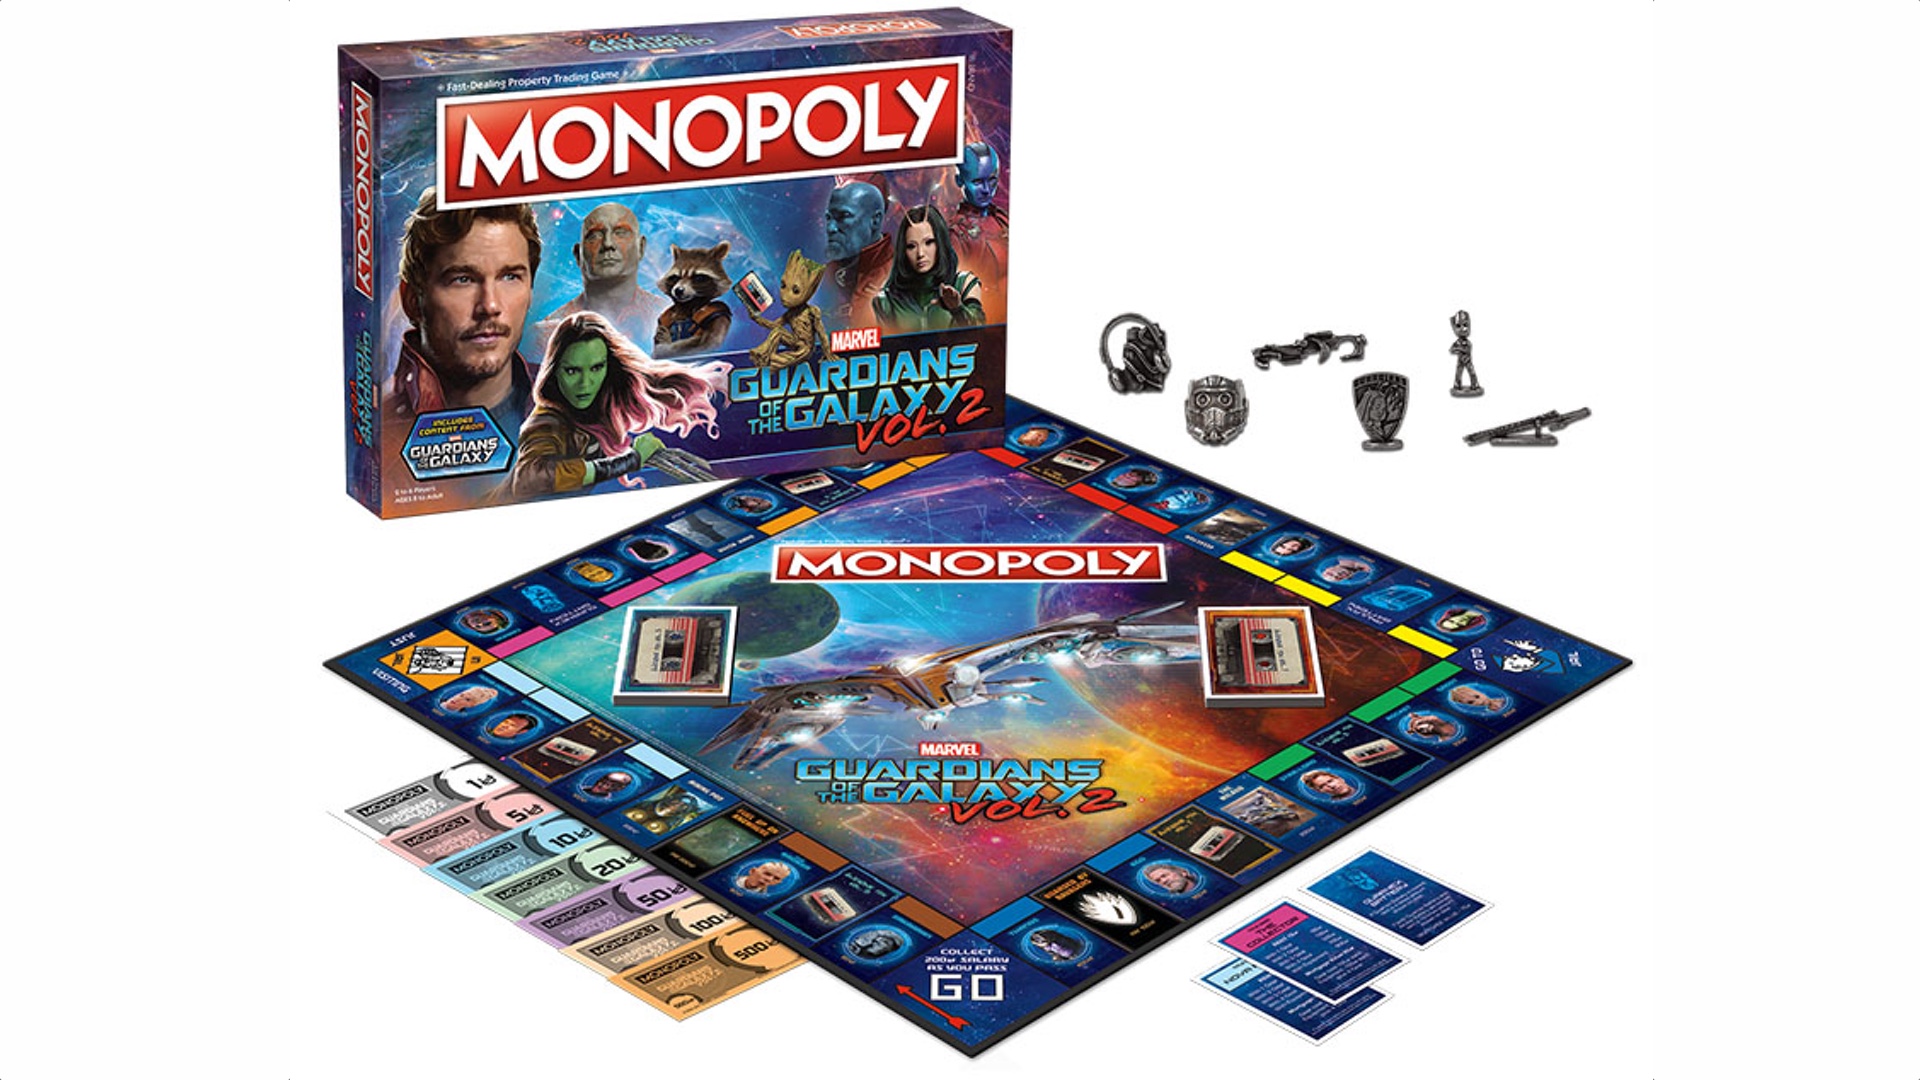 Que es el monopoly